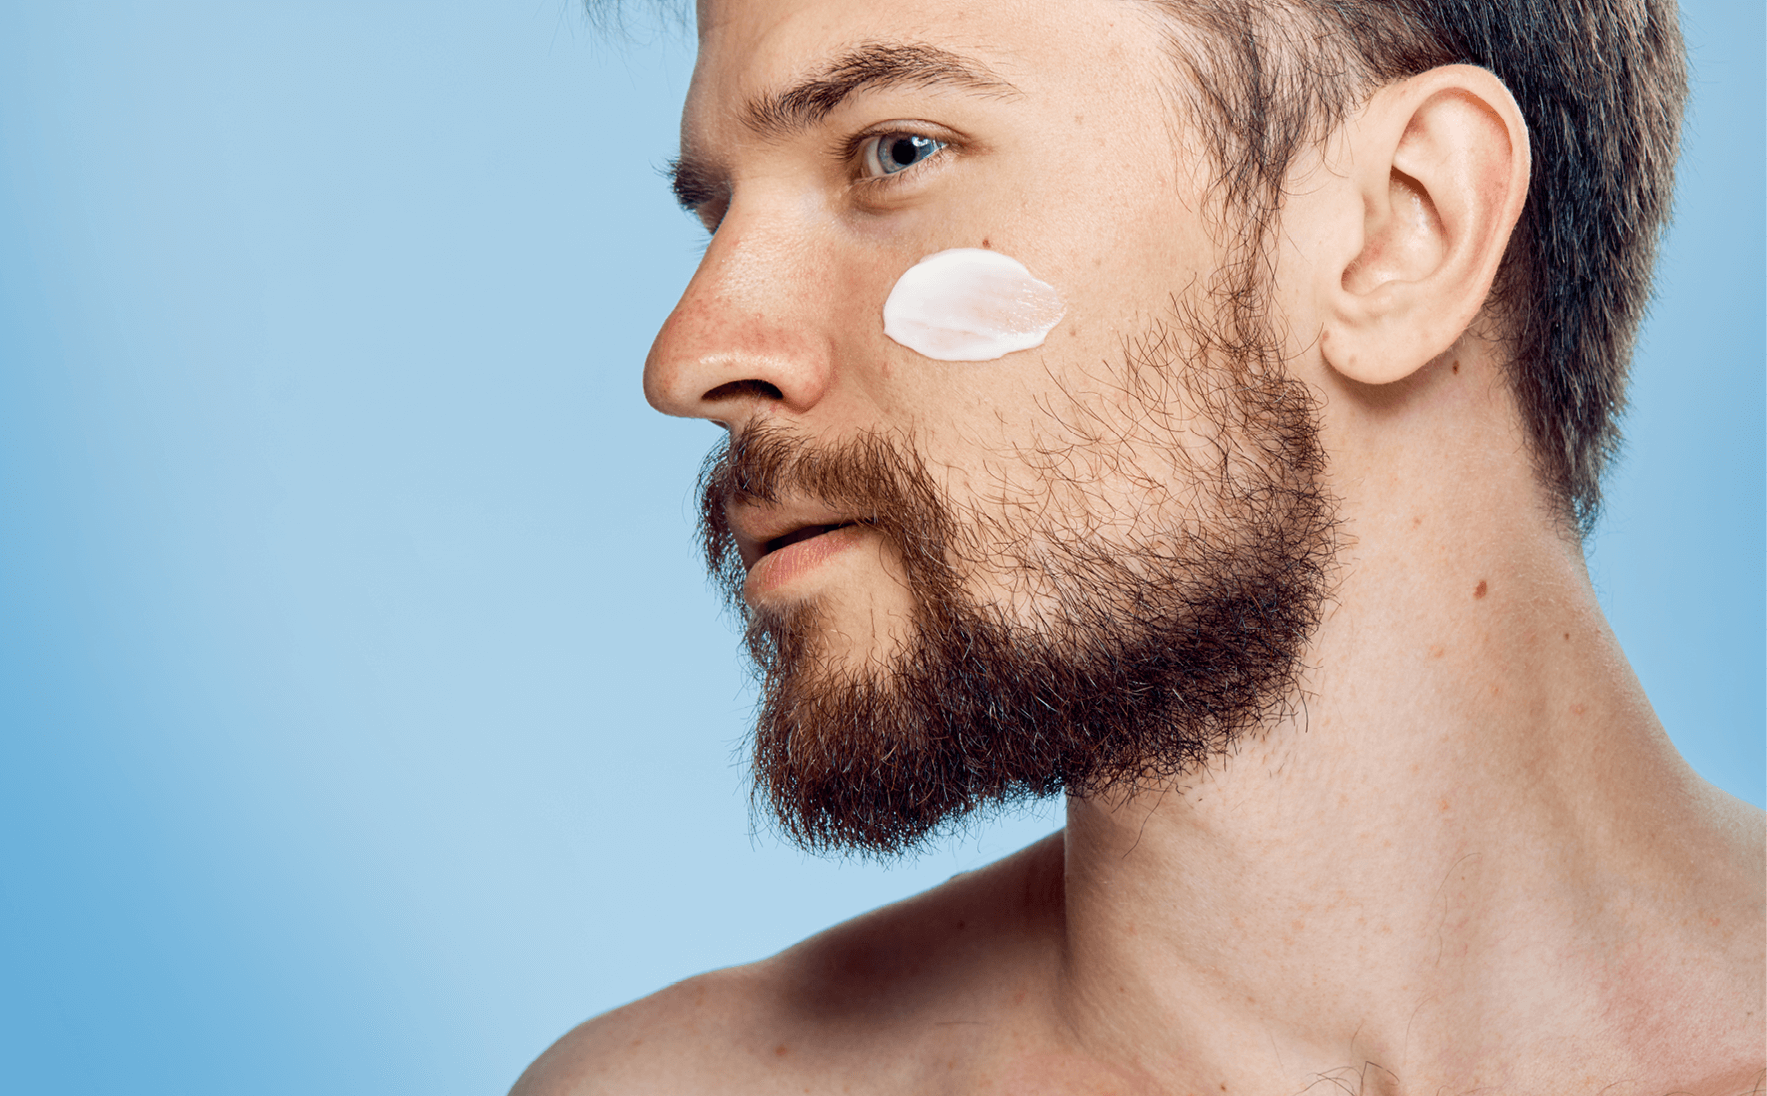 Dermokosmetyki dla mężczyzn – jakie produkty do pielęgnacji powinny się znaleźć w męskiej kosmetyczce?